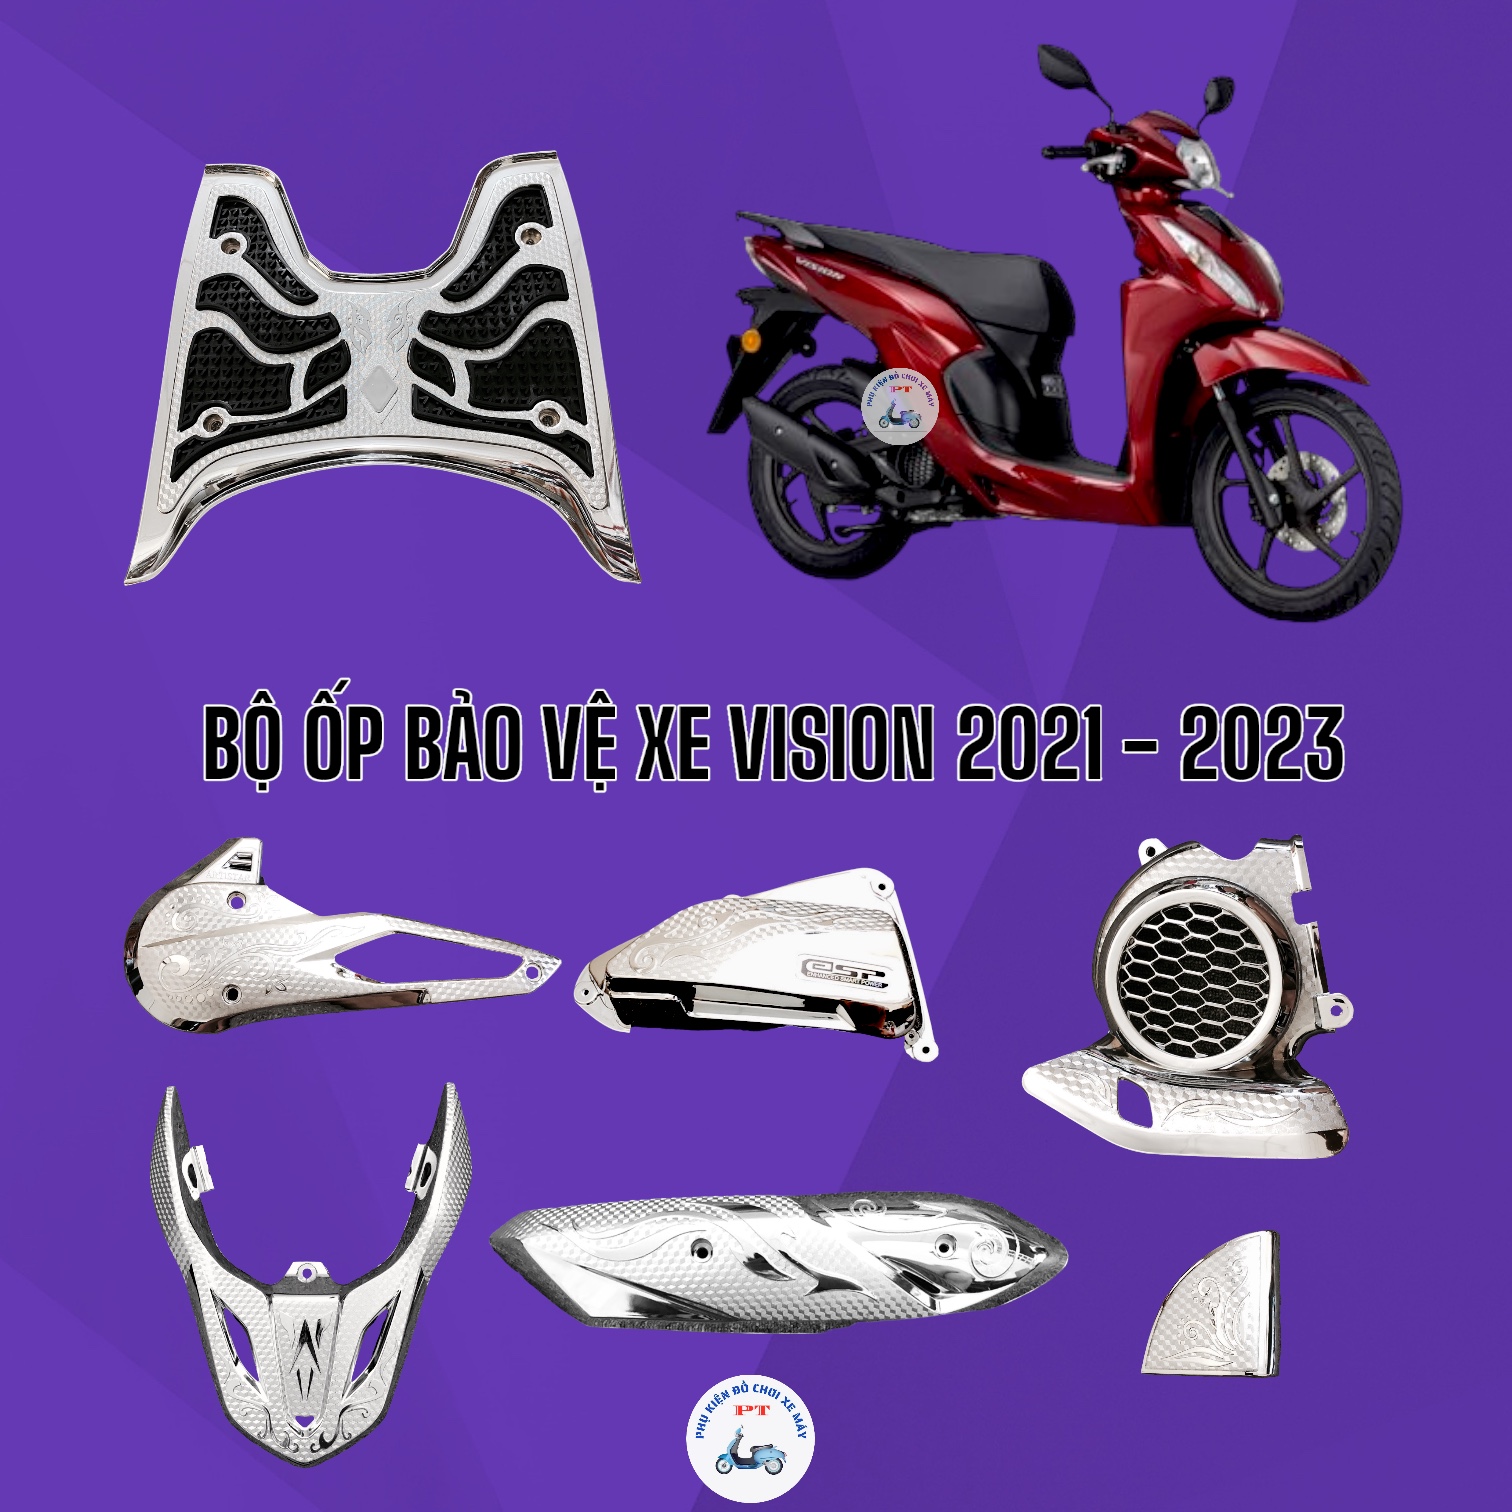 Bộ Ốp Xe Honda Vision đời 2021, 2022, 2023 - Xi mạ crom - Bản Cá Tính, Bản Thể Thao, Bản Đặc Biệt, Bản Thời Trang, Bản Giới Hạn